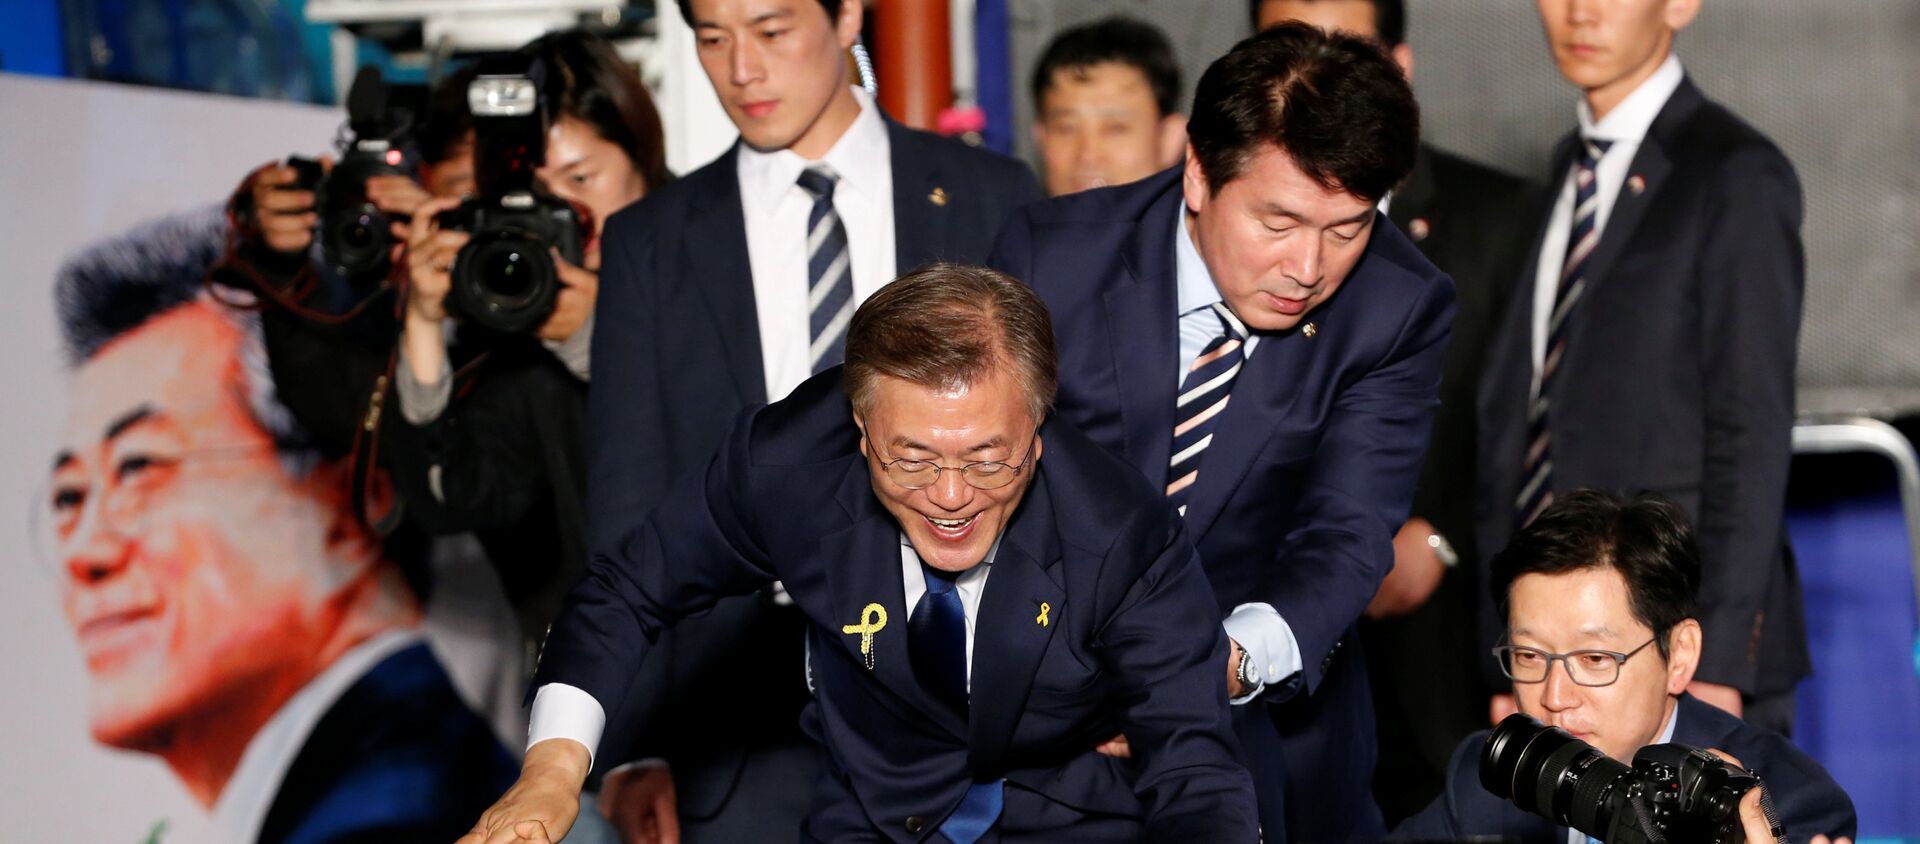 Güney Kore Devlet Başkanı Moon Jae-in ve arkada solda koruması Choi Young-jae - Sputnik Türkiye, 1920, 15.05.2017